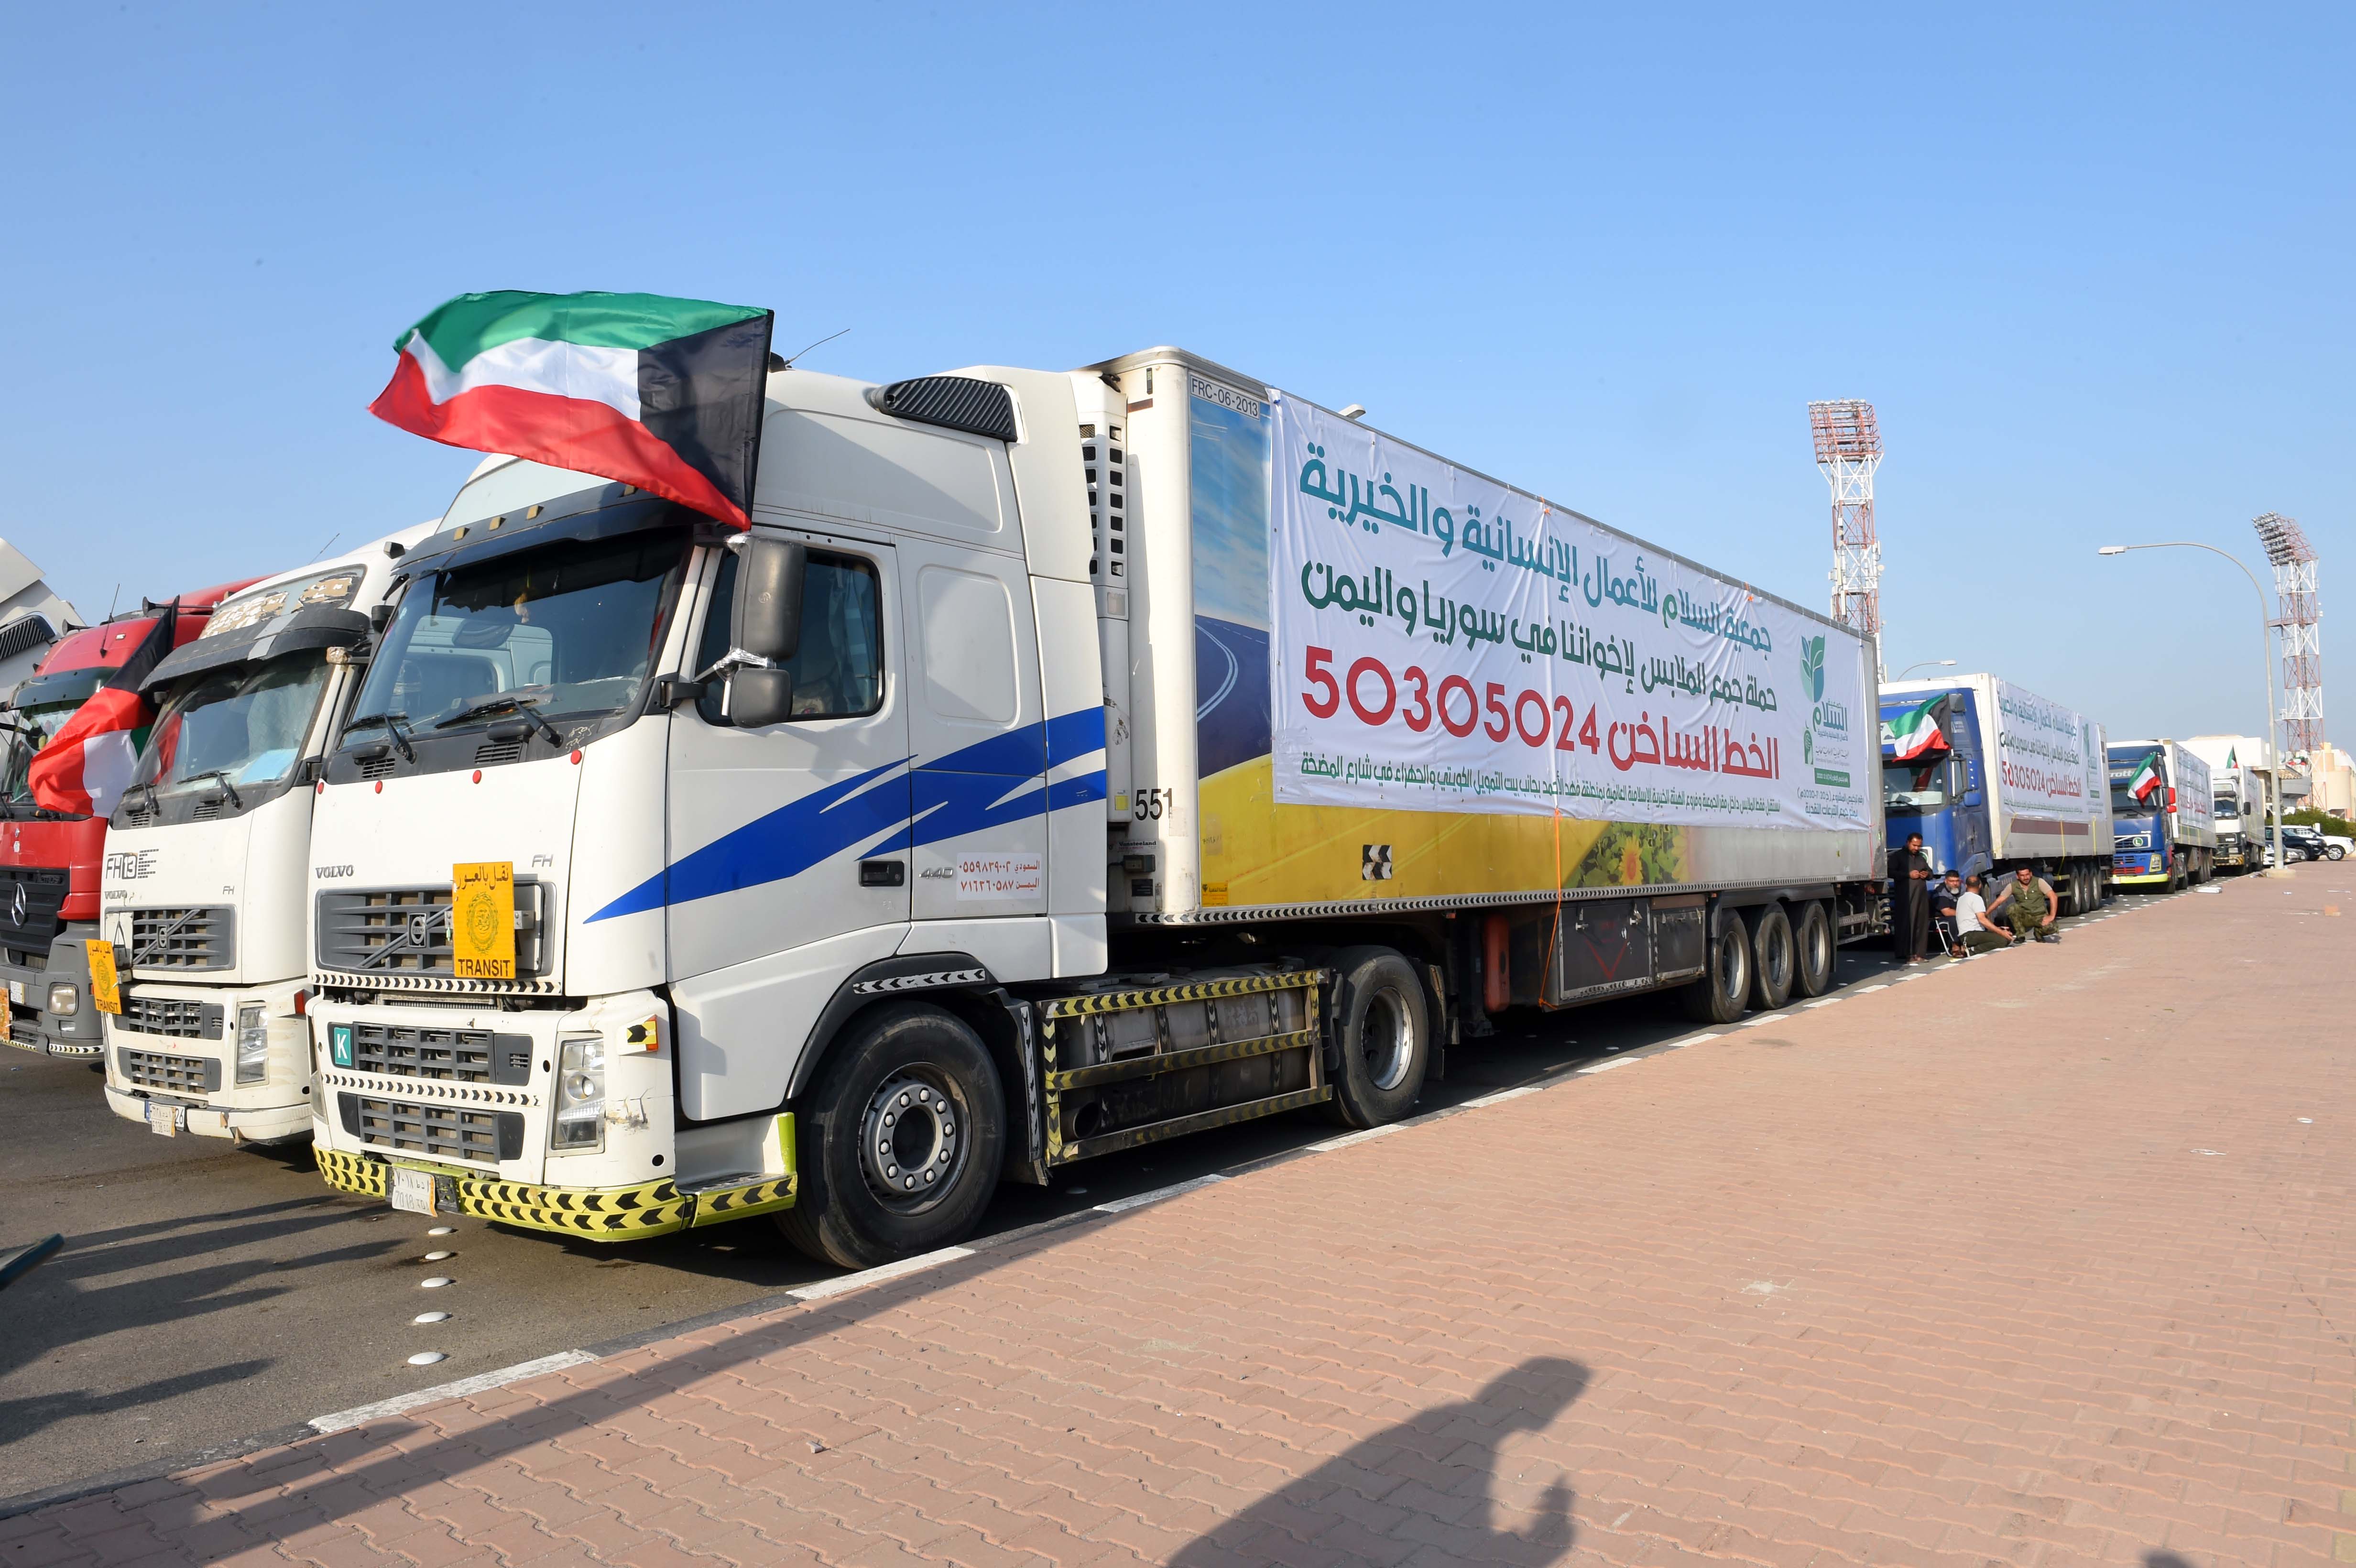 Kuwait charities dispatch 203 aid trucks to Syria, Yemen